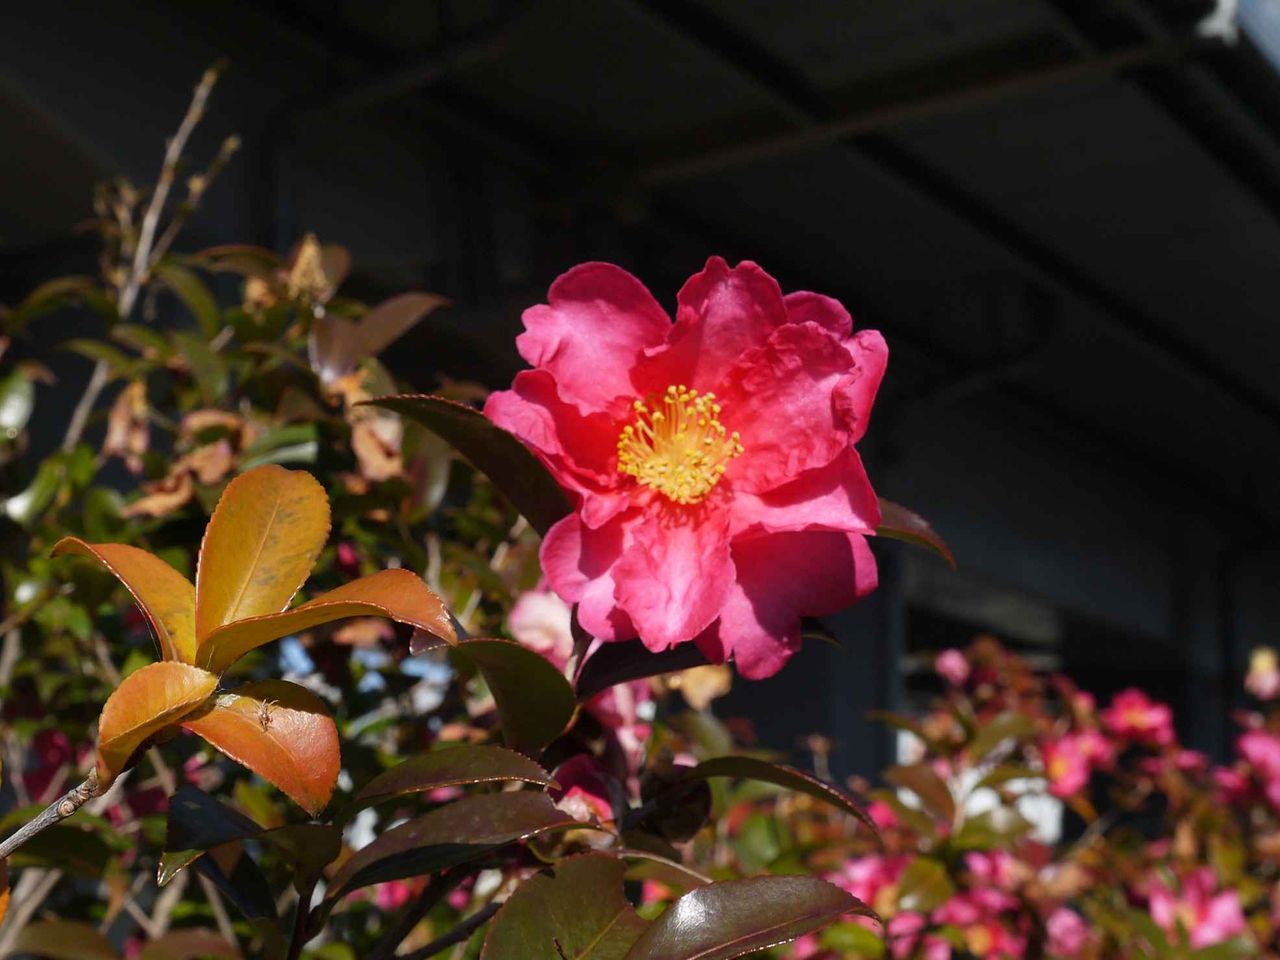 街かどで咲くこのあざやかな赤い花は何 19年冬 高槻network新聞